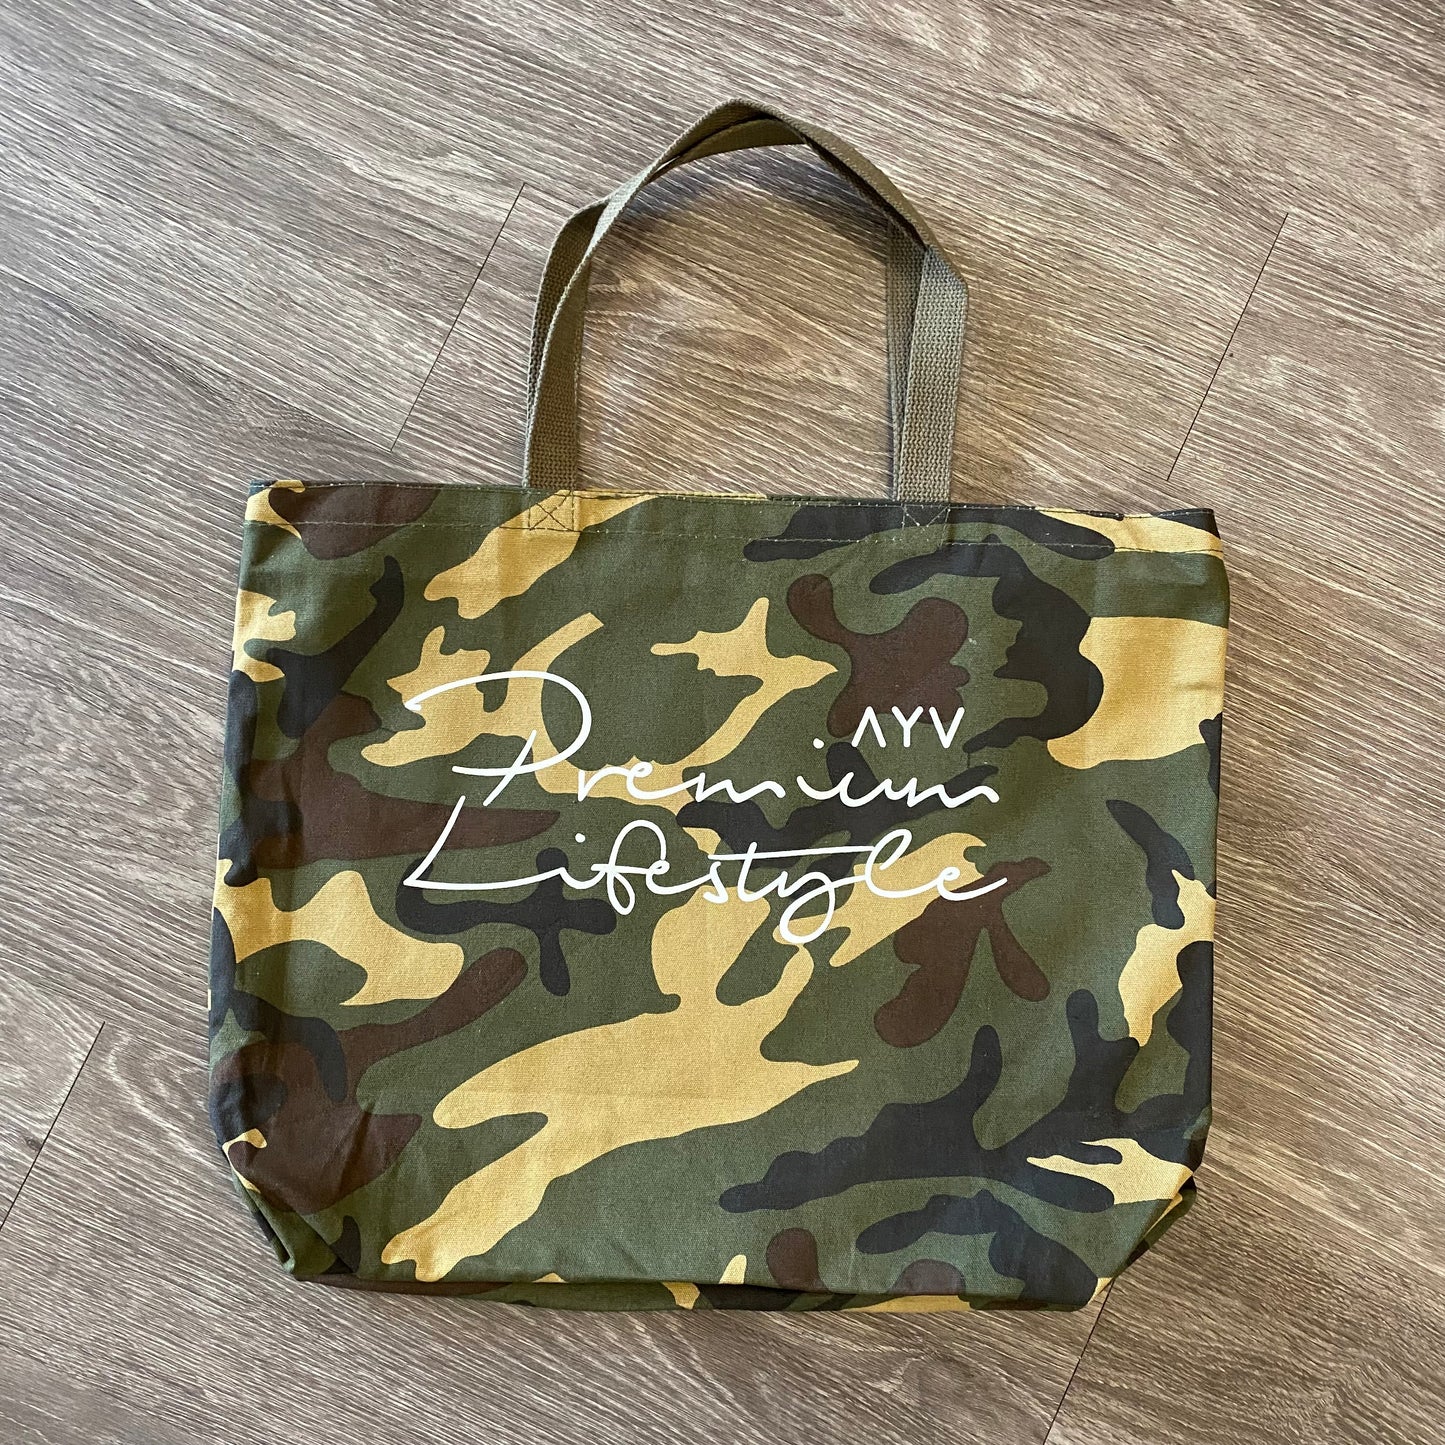 Premium Lifestyle Camo Tote Bag